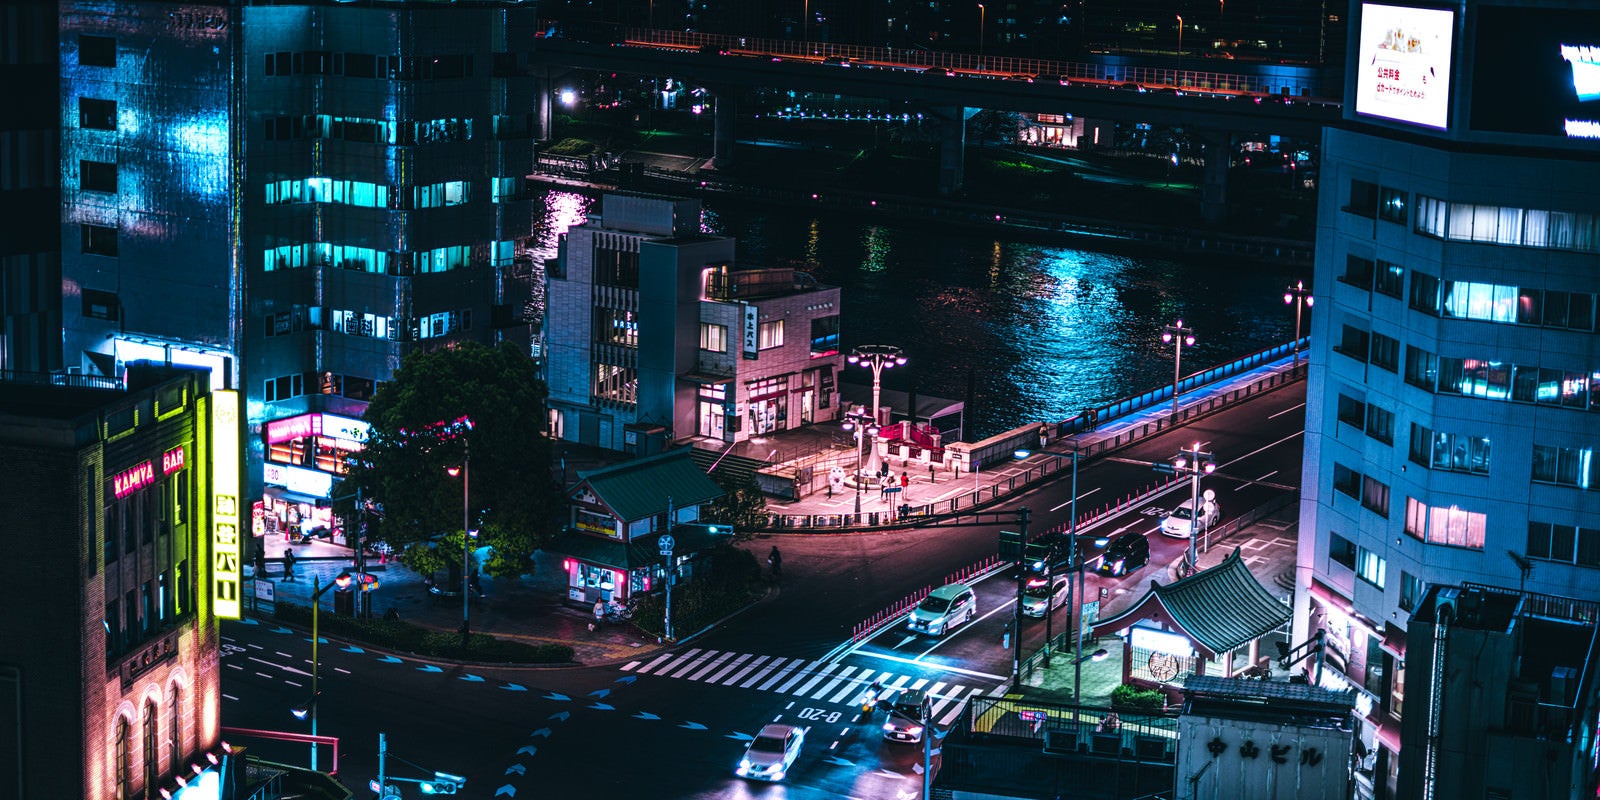 「夜の隅田川と街並み」の写真